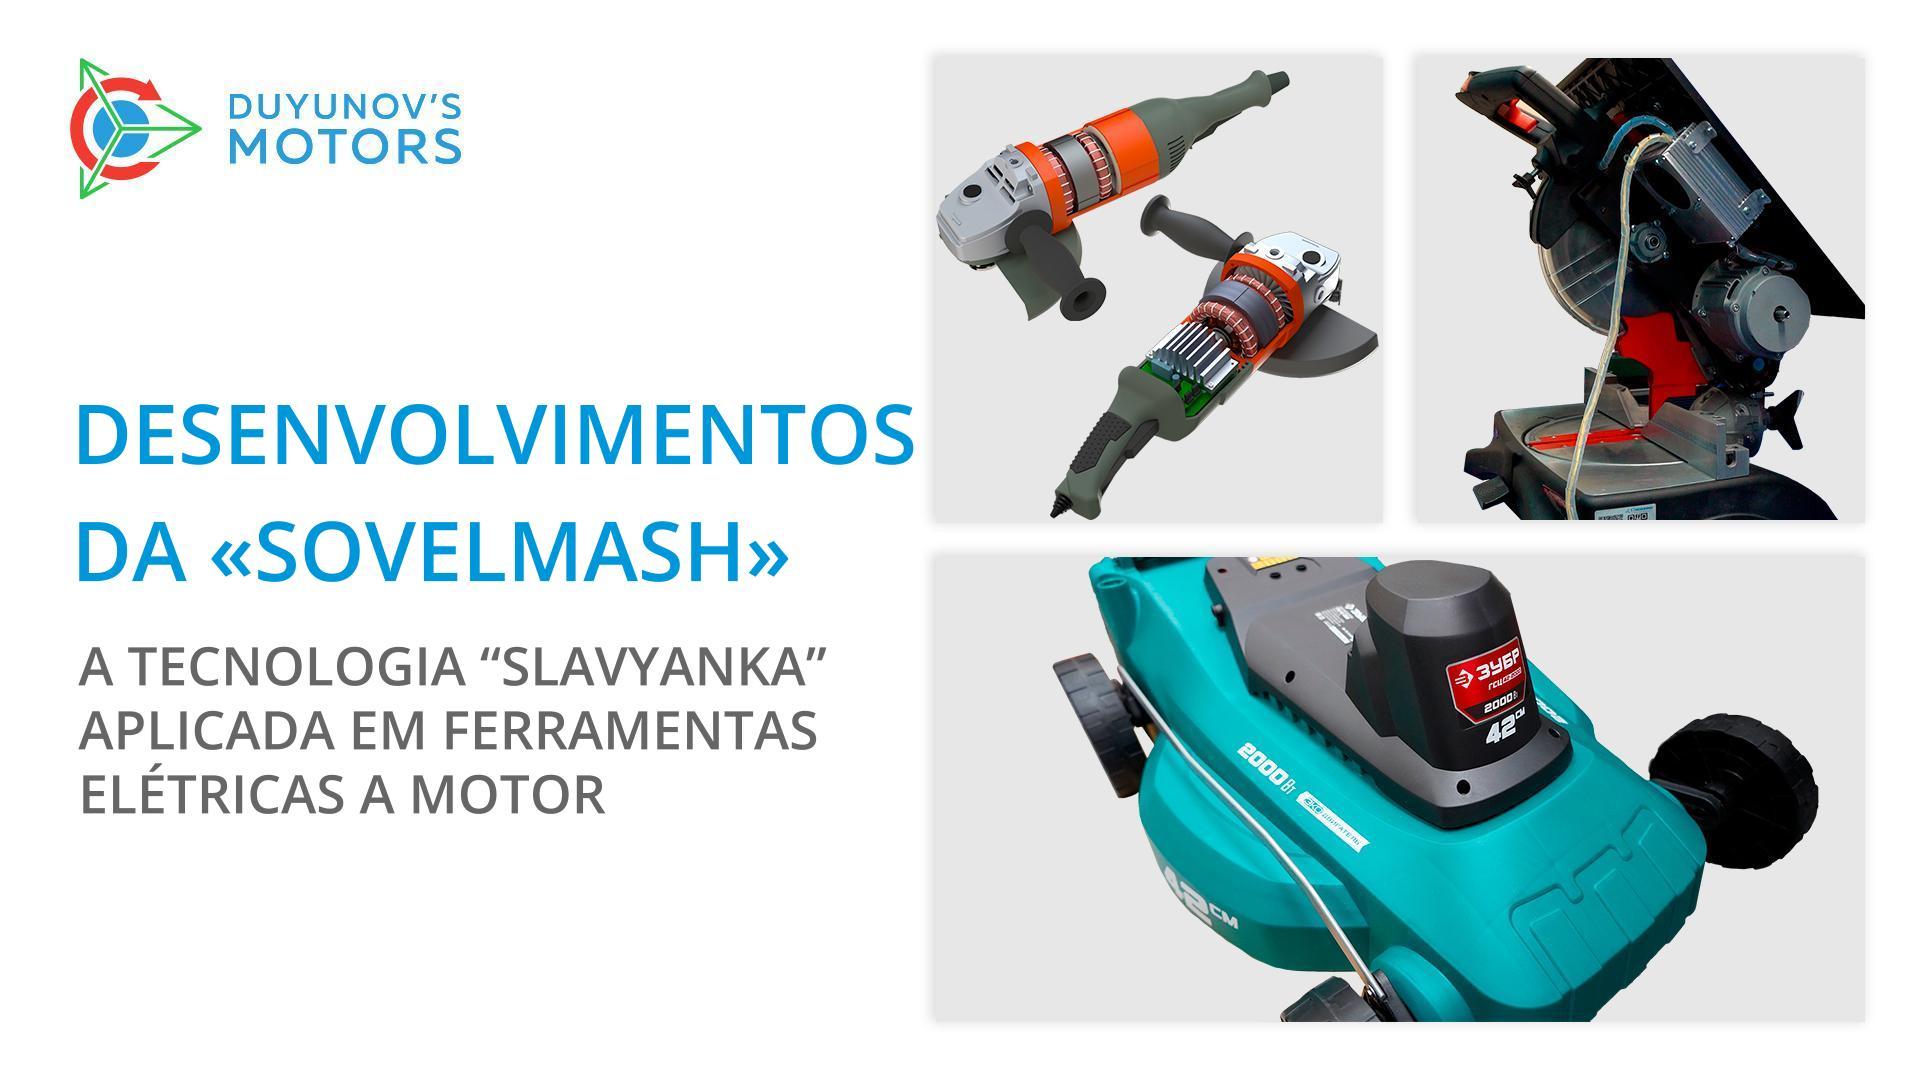 Desenvolvimentos da "Sovelmash": a tecnologia "Slavyanka" aplicada em ferramentas elétricas a motor